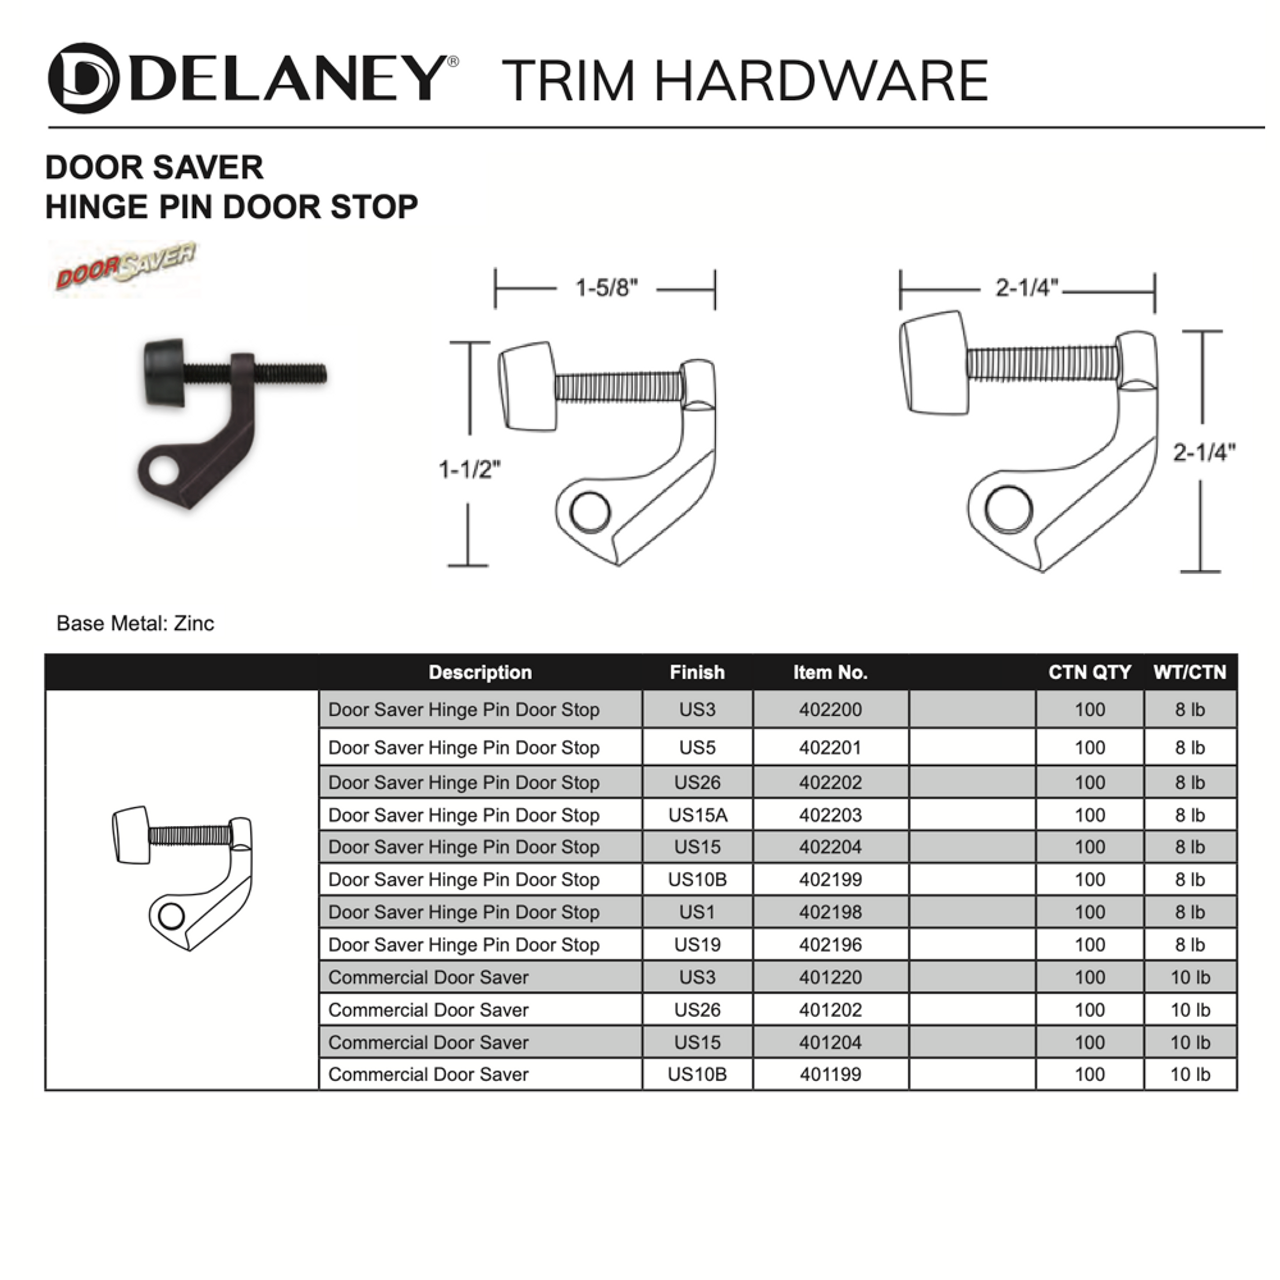 DoorSaver Hinge Pin Door Stop - Delaney Hardware